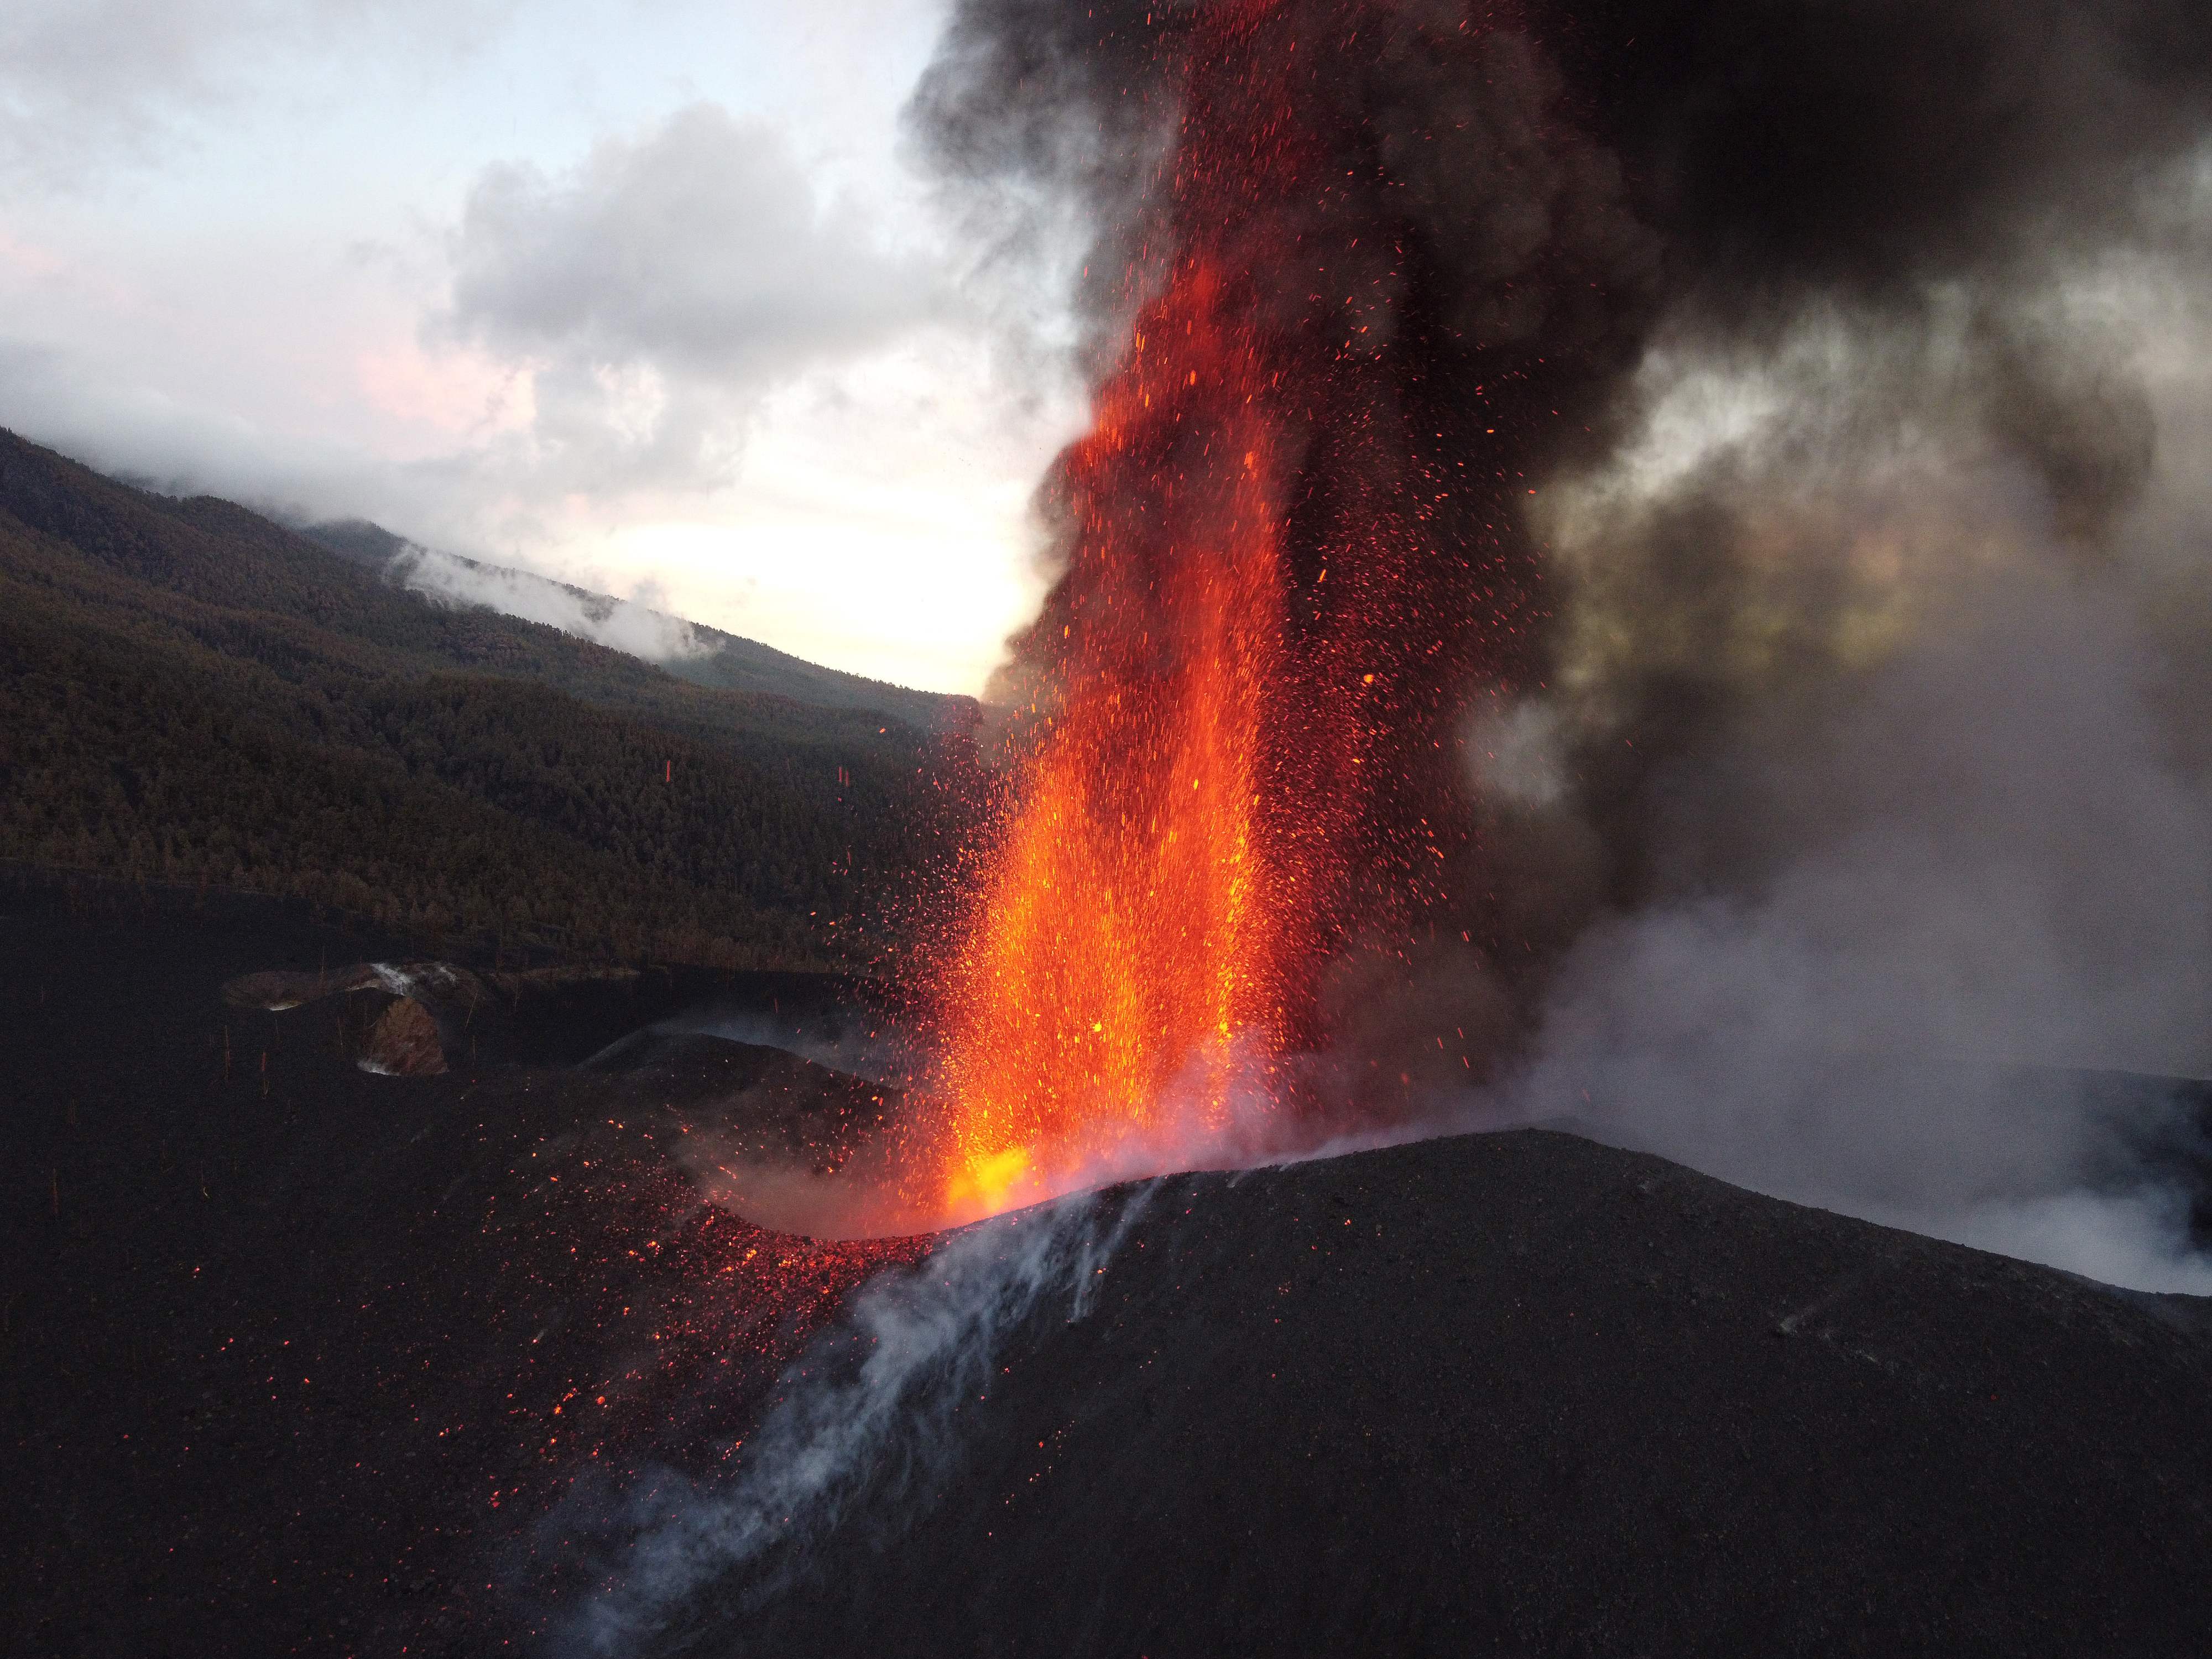 El volcán Cumbre Vieja arrojando lava, cenizas y humo, en Los Llanos de Aridane en la isla canaria de La Palma. (Foto Prensa Libre: AFP)